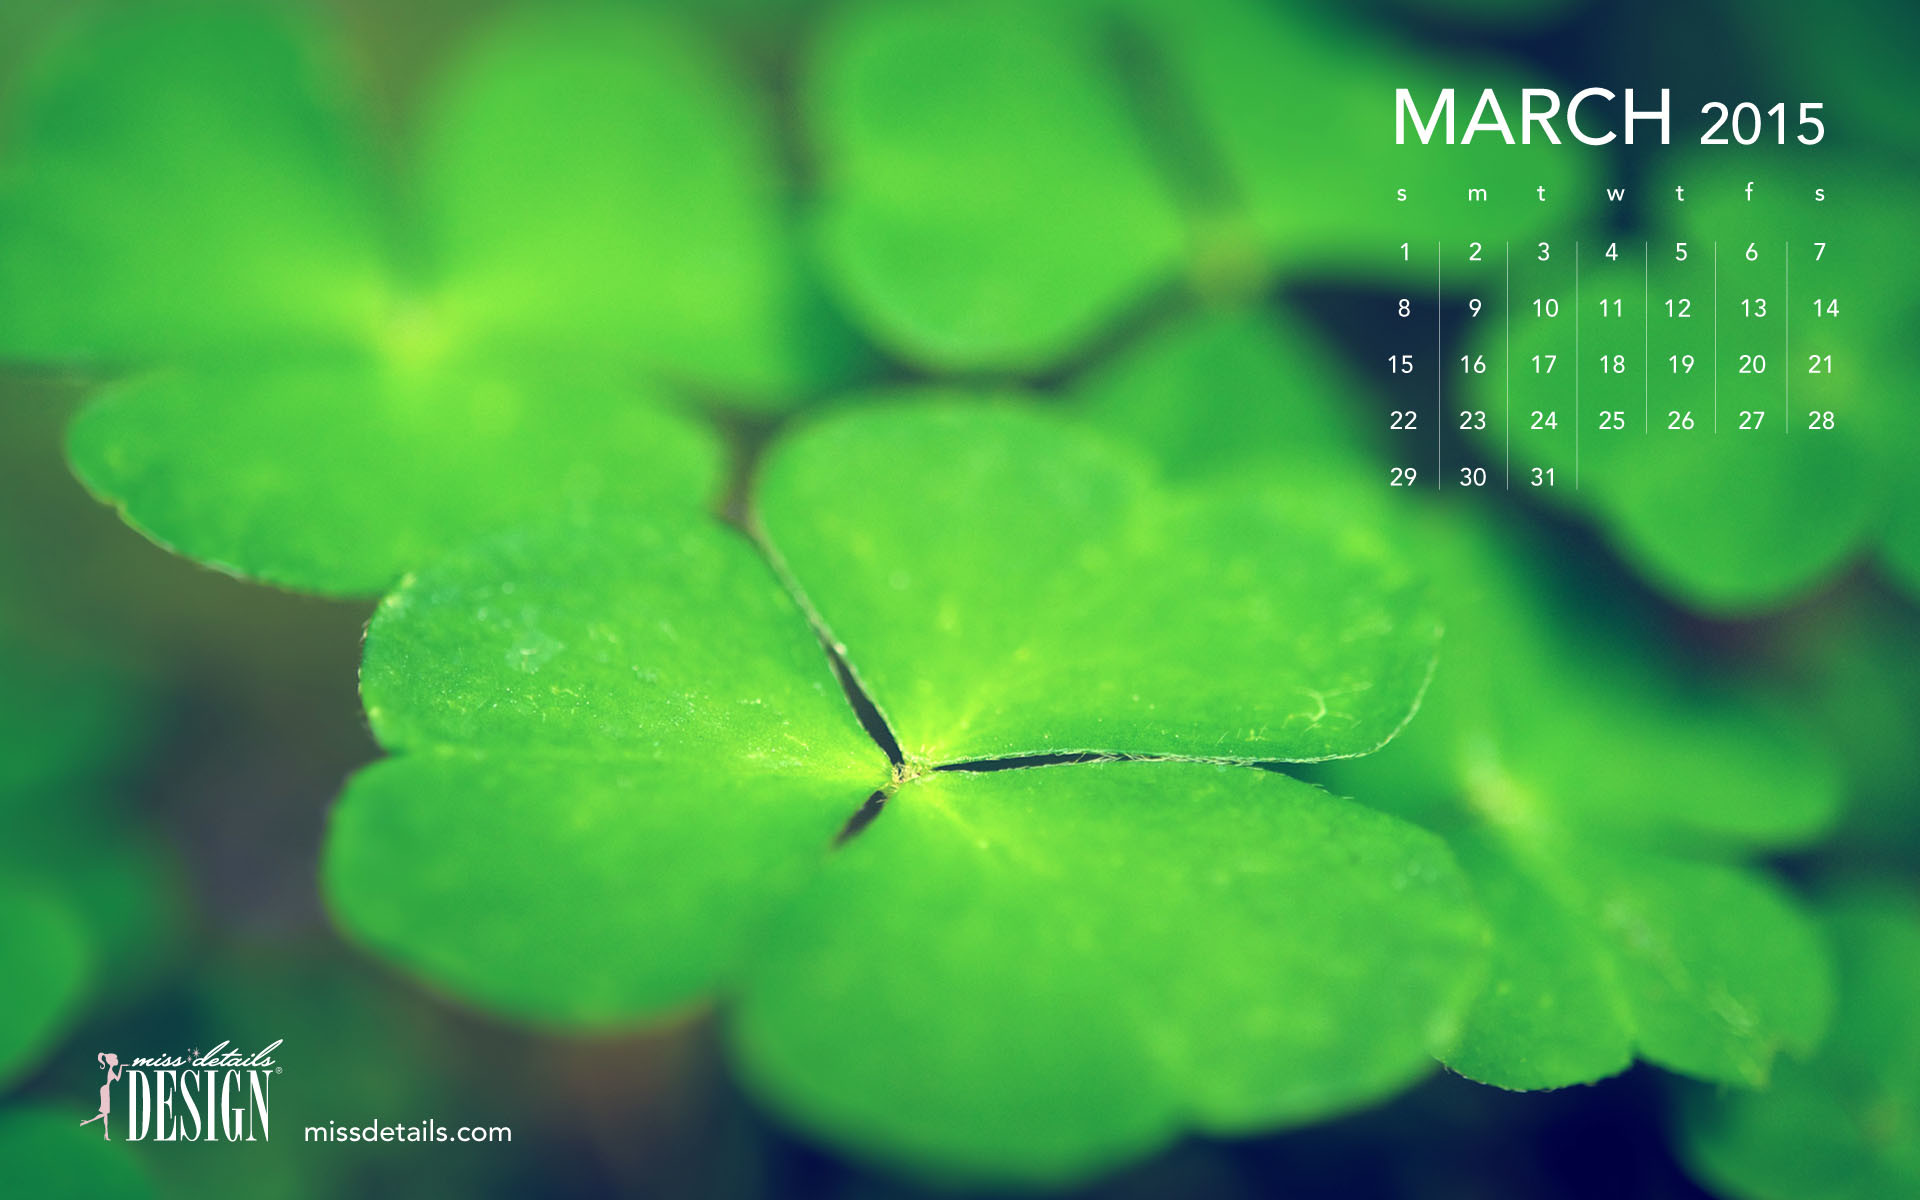 1920x1200 Free March 2015 desktop calendar from missdetails.com - Green Clovers